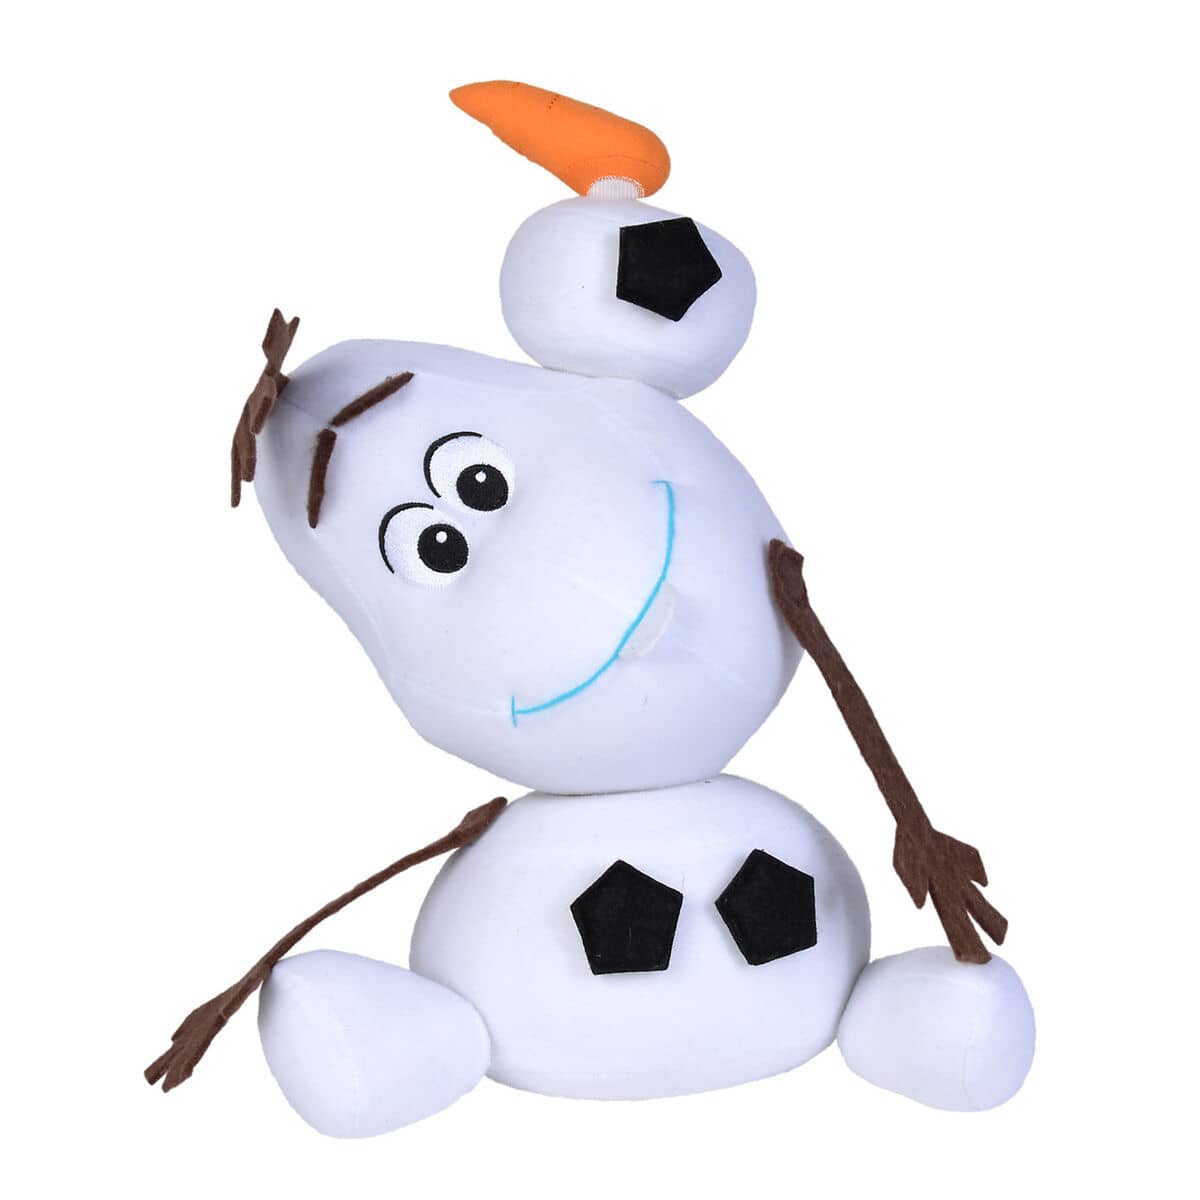 Peluche Reposicionable Olaf Frozen 2 Disney soft 30cm - Espadas y Más